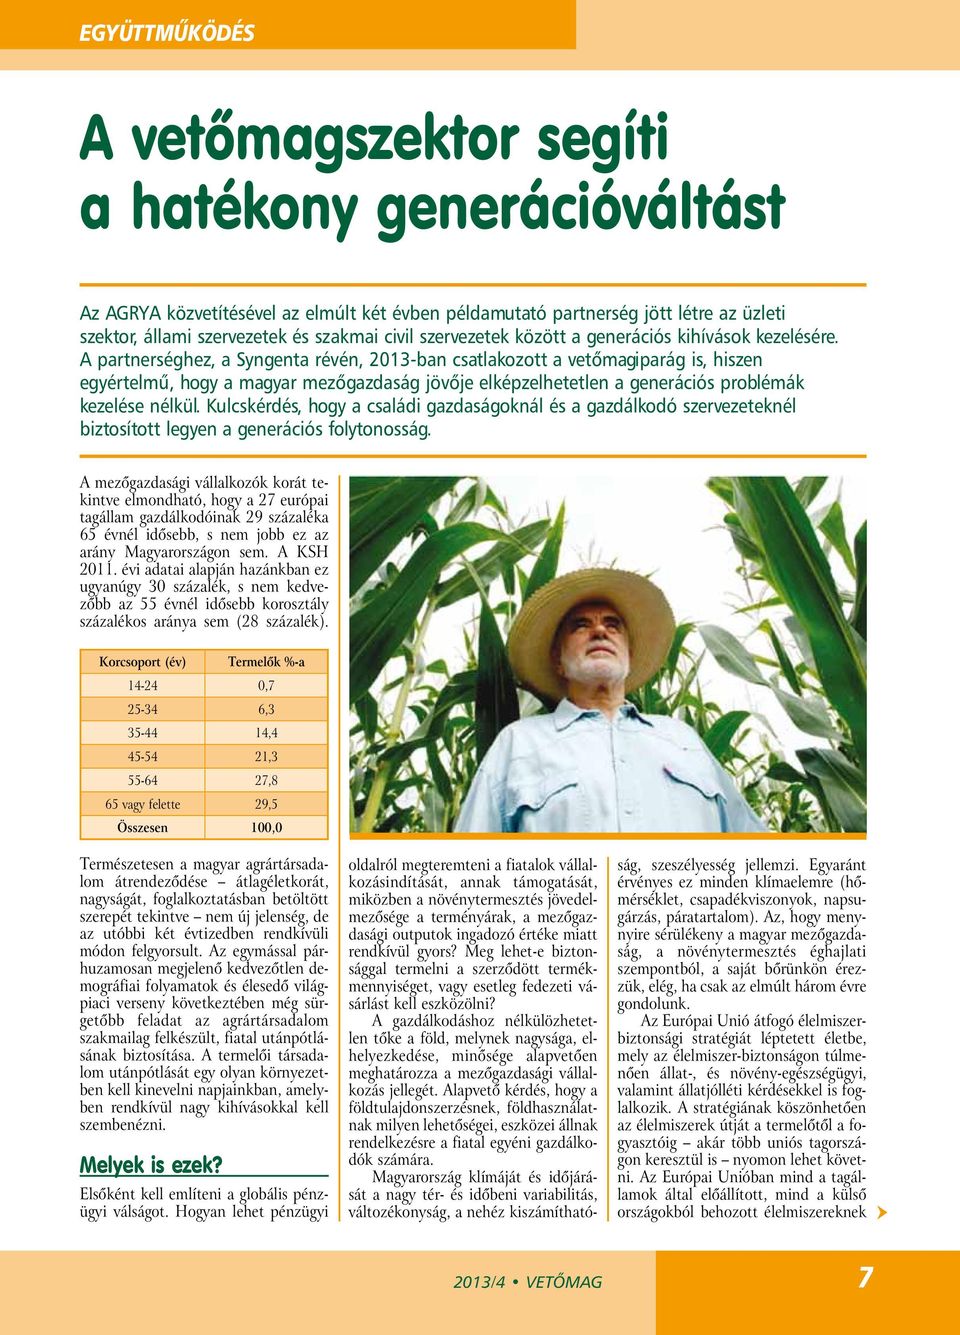 A partnerséghez, a Syngenta révén, 2013-ban csatlakozott a vetőmagiparág is, hiszen egyértelmű, hogy a magyar mezőgazdaság jövője elképzelhetetlen a generációs problémák kezelése nélkül.